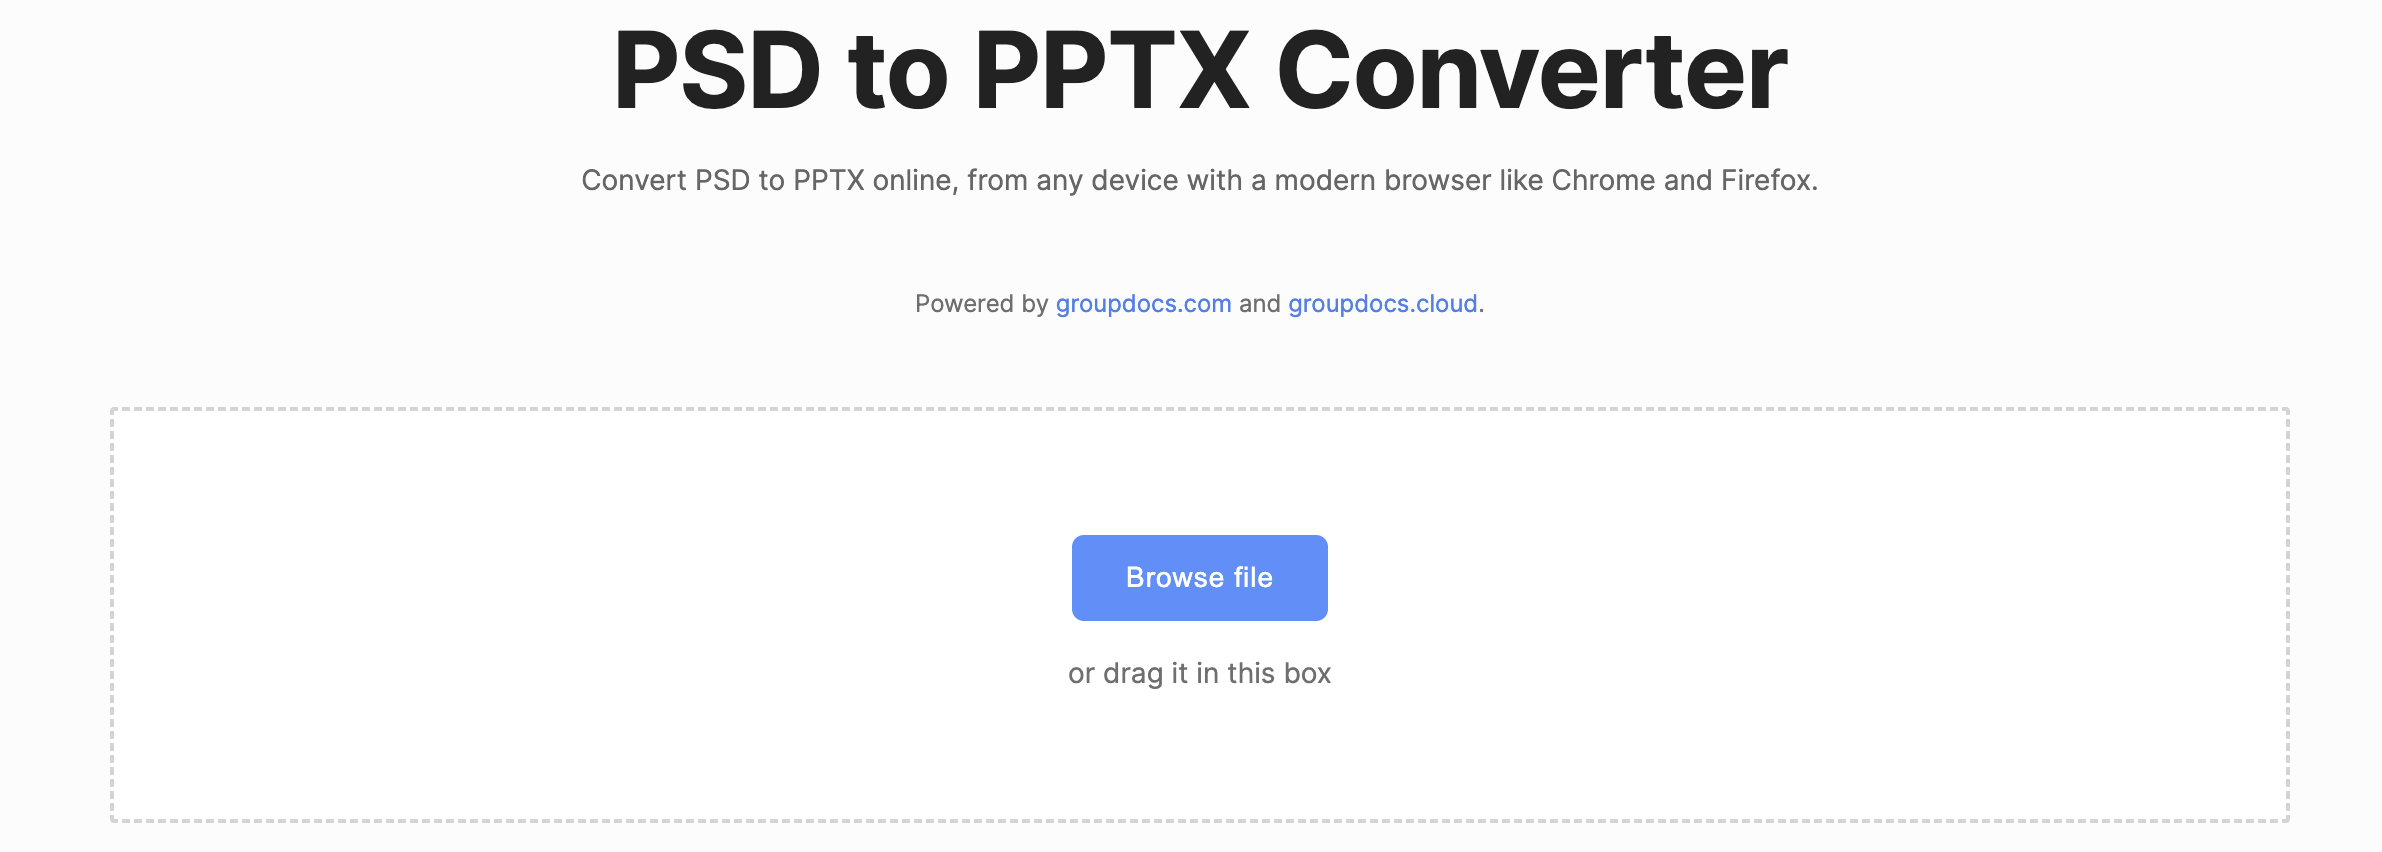 convert psd to pptx online